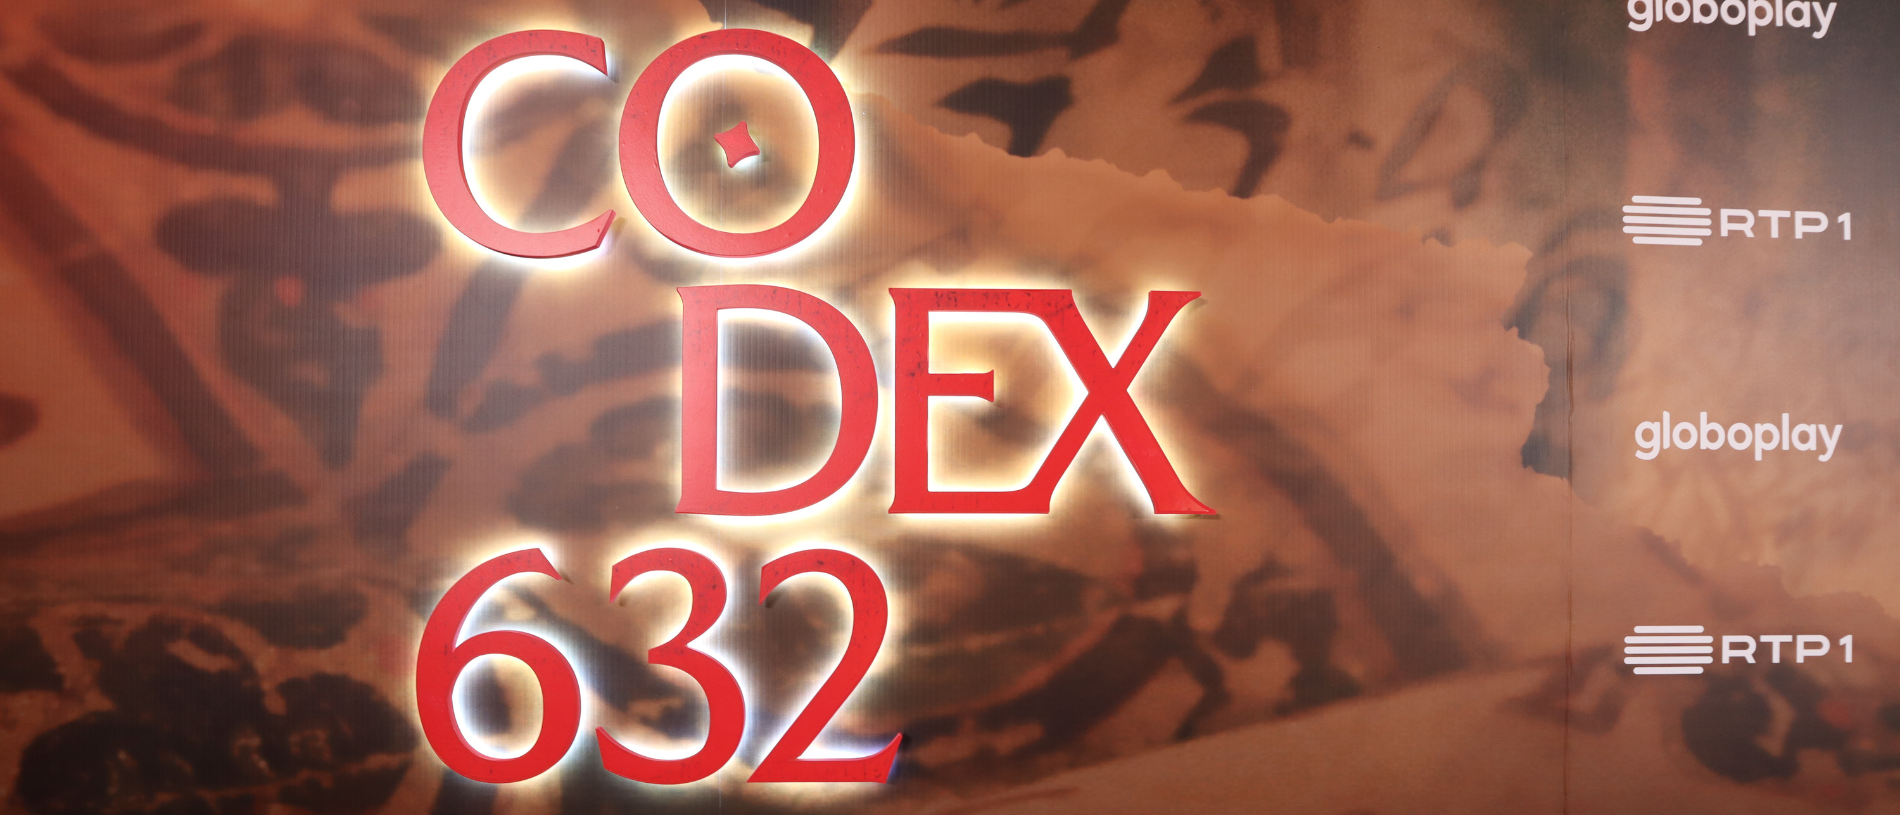 Read more about the article Do livro ao ecrã: “Codex 632” traz à televisão mistério do passado e questões do presente